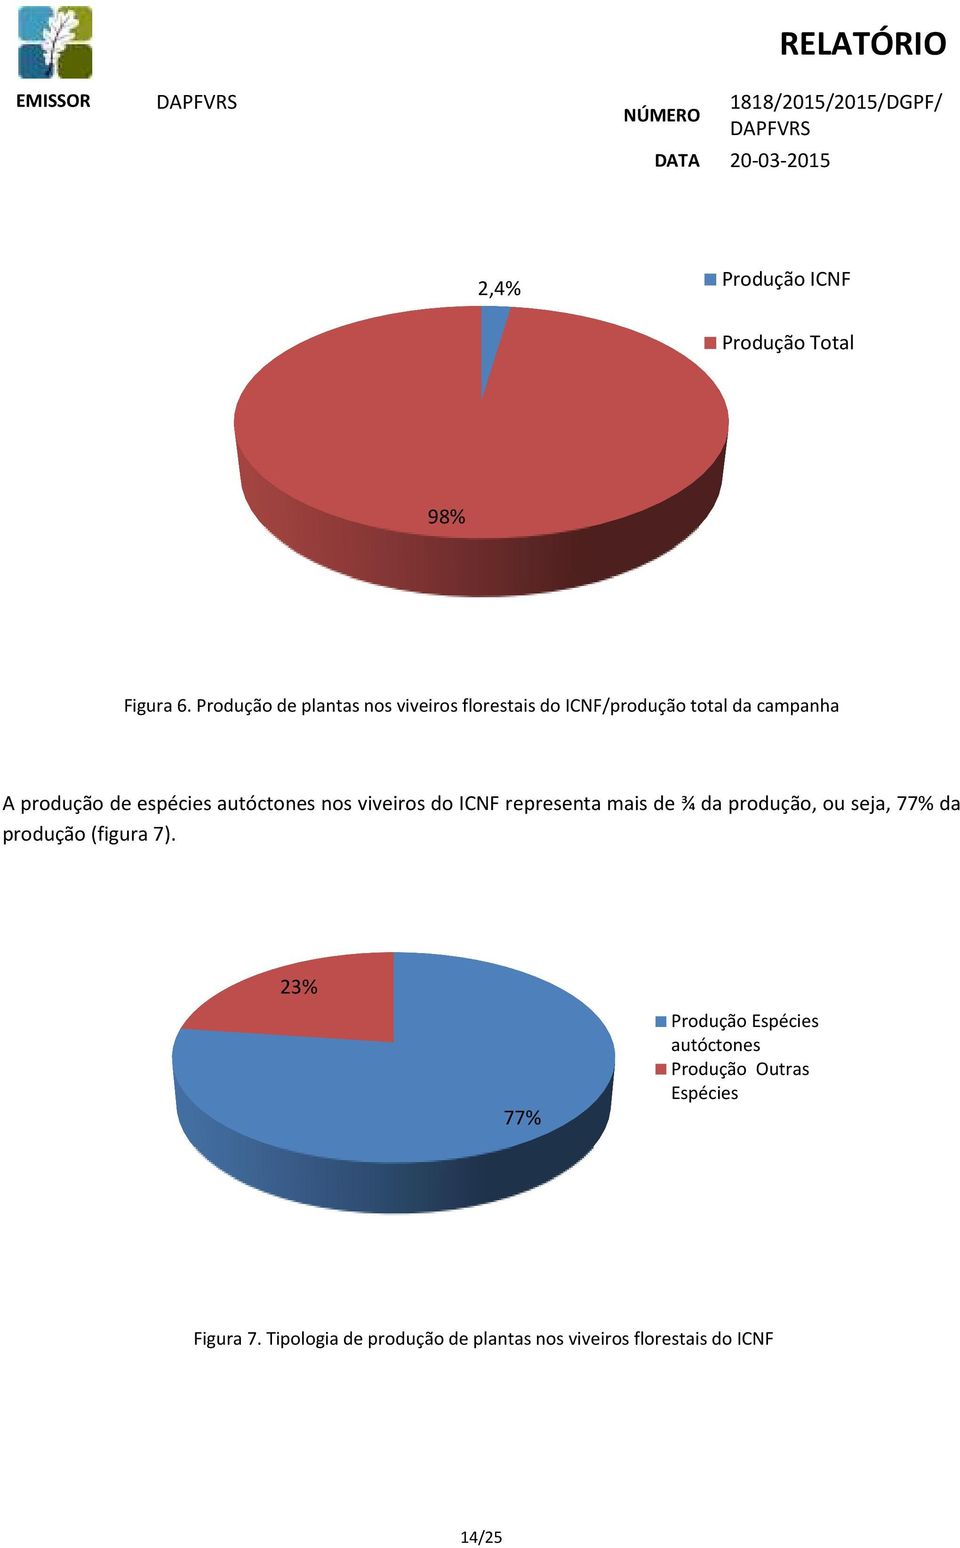 espécies autóctones nos viveiros do ICNF representa mais de ¾ da produção, ou seja, 77% da